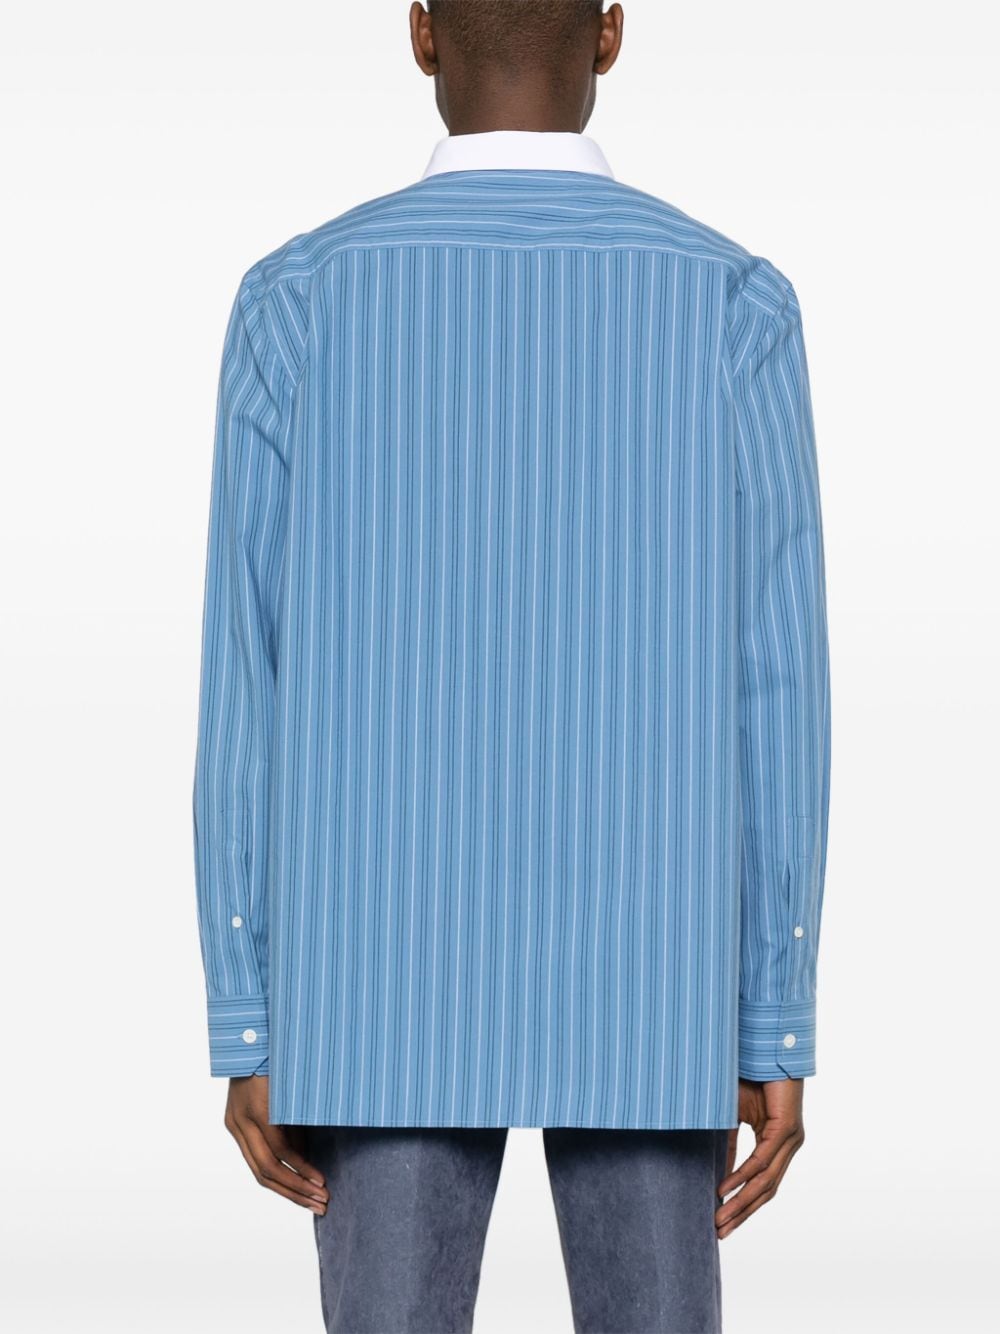 Loewe LOEWE- Striped Cotton Shirt